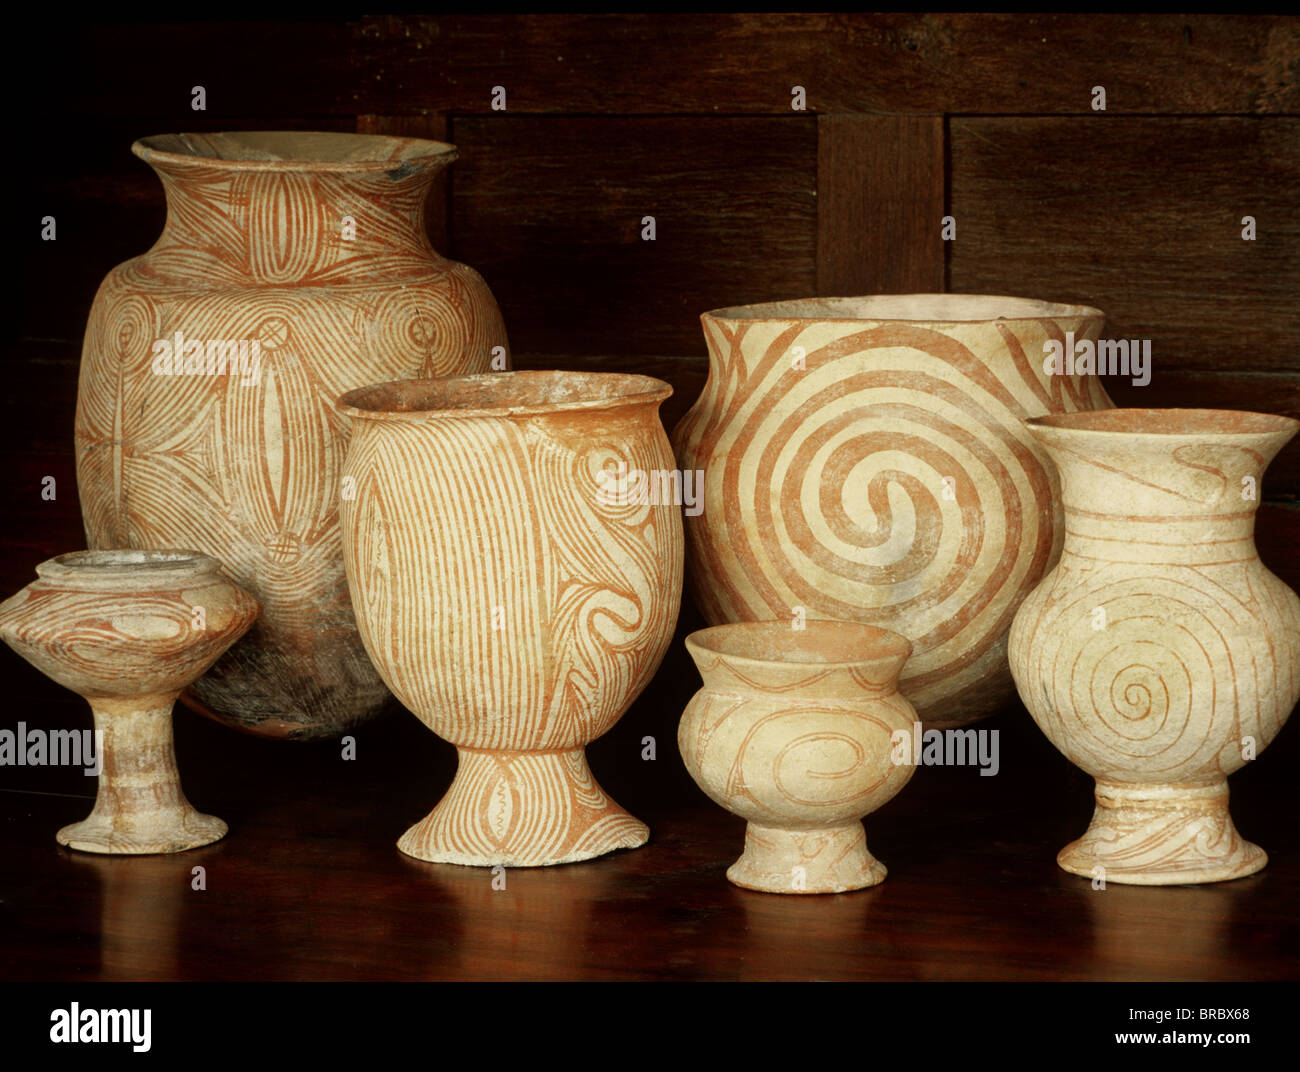 Prohibición de Chiang, Suan Pakkad cerámica prehistórica Museum Collection, Bangkok, Tailandia Foto de stock